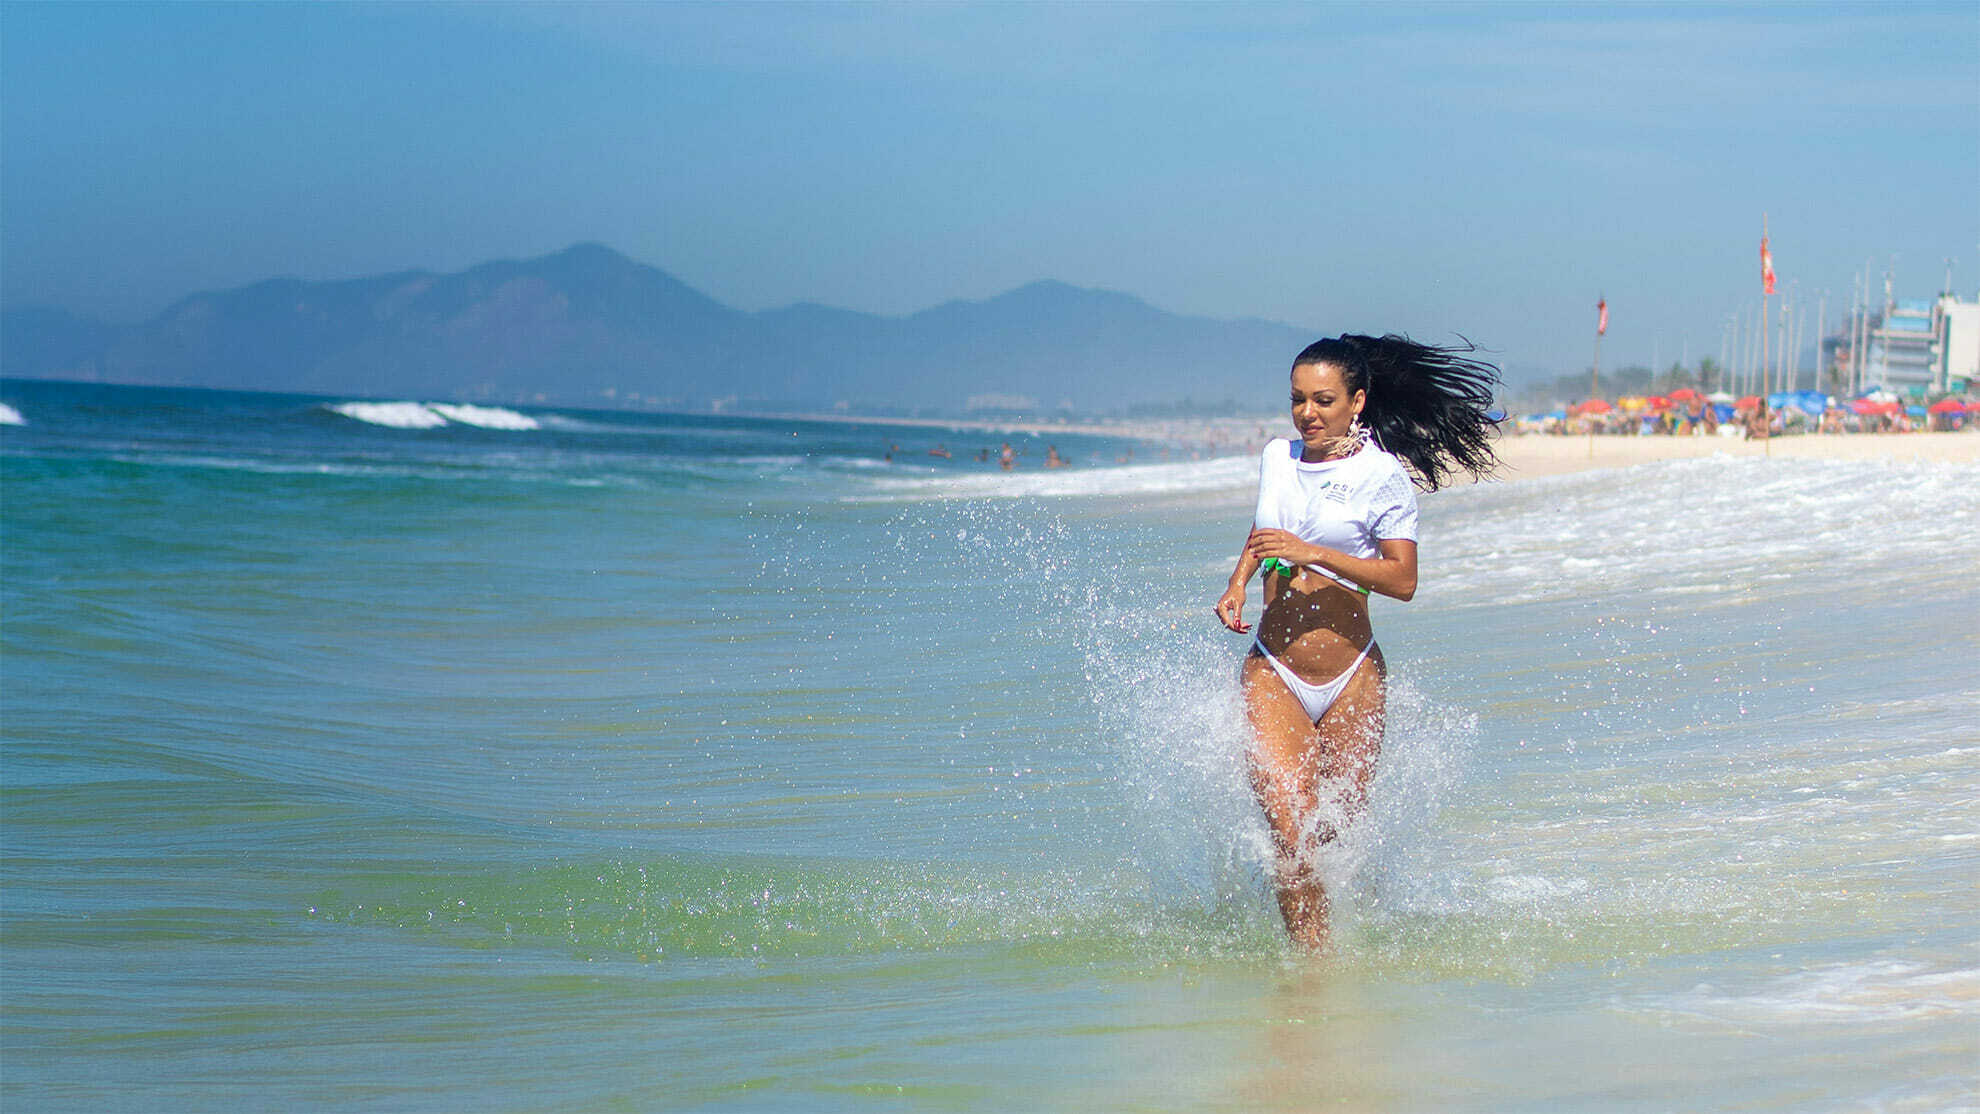 Ensaio fotografico com Leticia Guimaraes a Rainha do Carnaval 2014 na praia da barra para o combustivel sem imposto